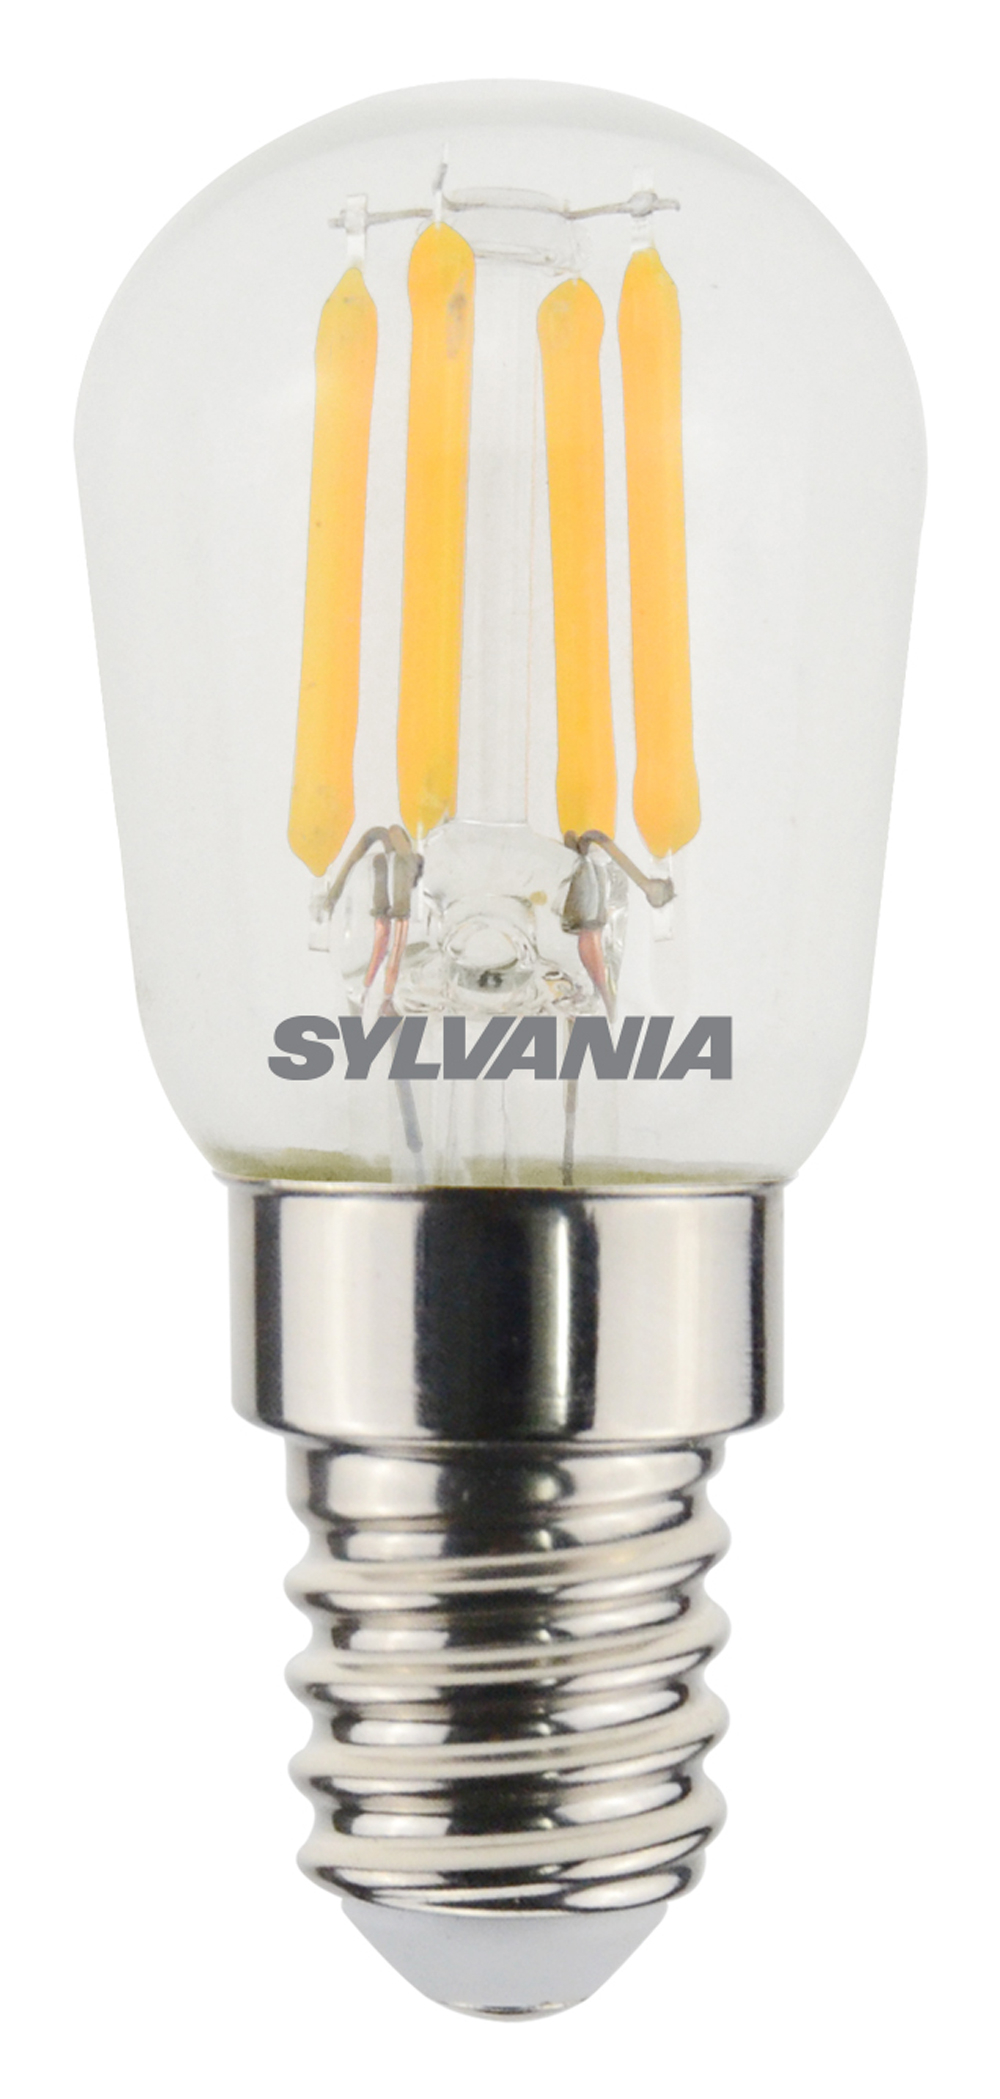 DiCUNO Ampoule LED réfrigérateur E14, Blanc froid 6000K, 3W remplace l' ampoule halogène 30W pour réfrigérateur, 300lm, Petit culot à vis lampe LED  pour frigo, hotte, machine à coudre, 2 Unité : 